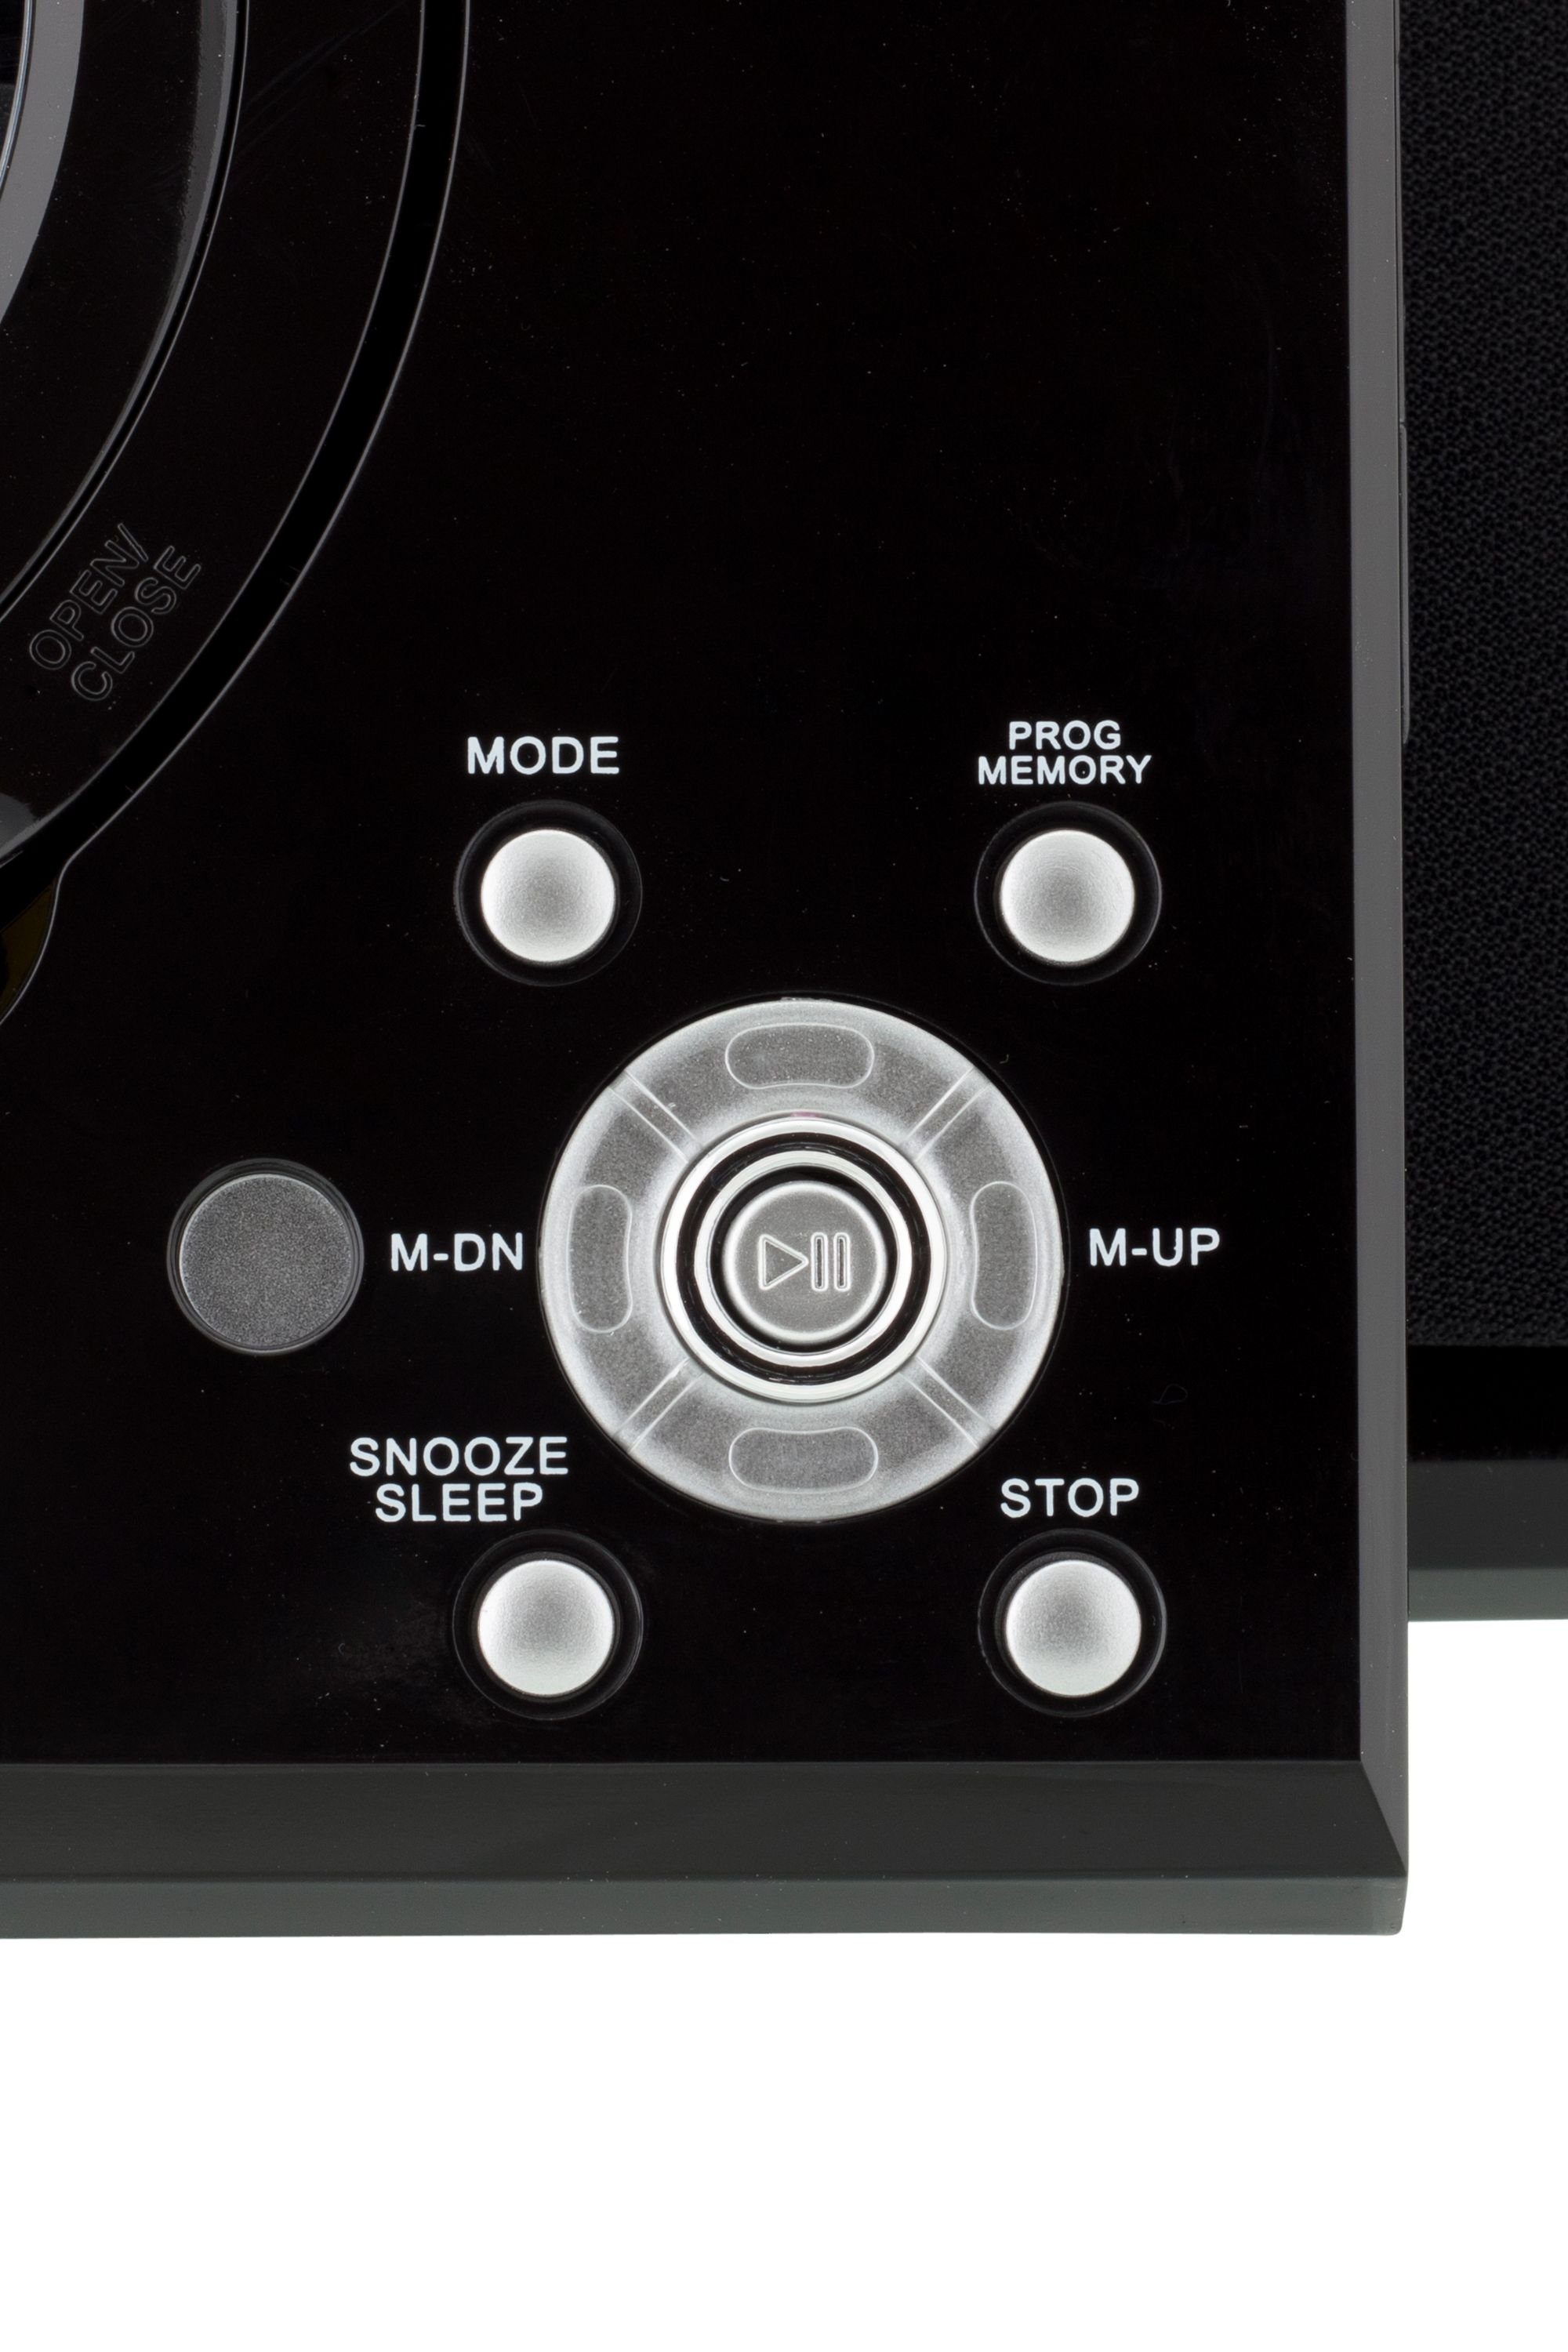 MC (UKW Kopfhöreranschluß Stereoanlage und AUX-IN) Microanlage 201 mit CD-Player, ROXX Radio,